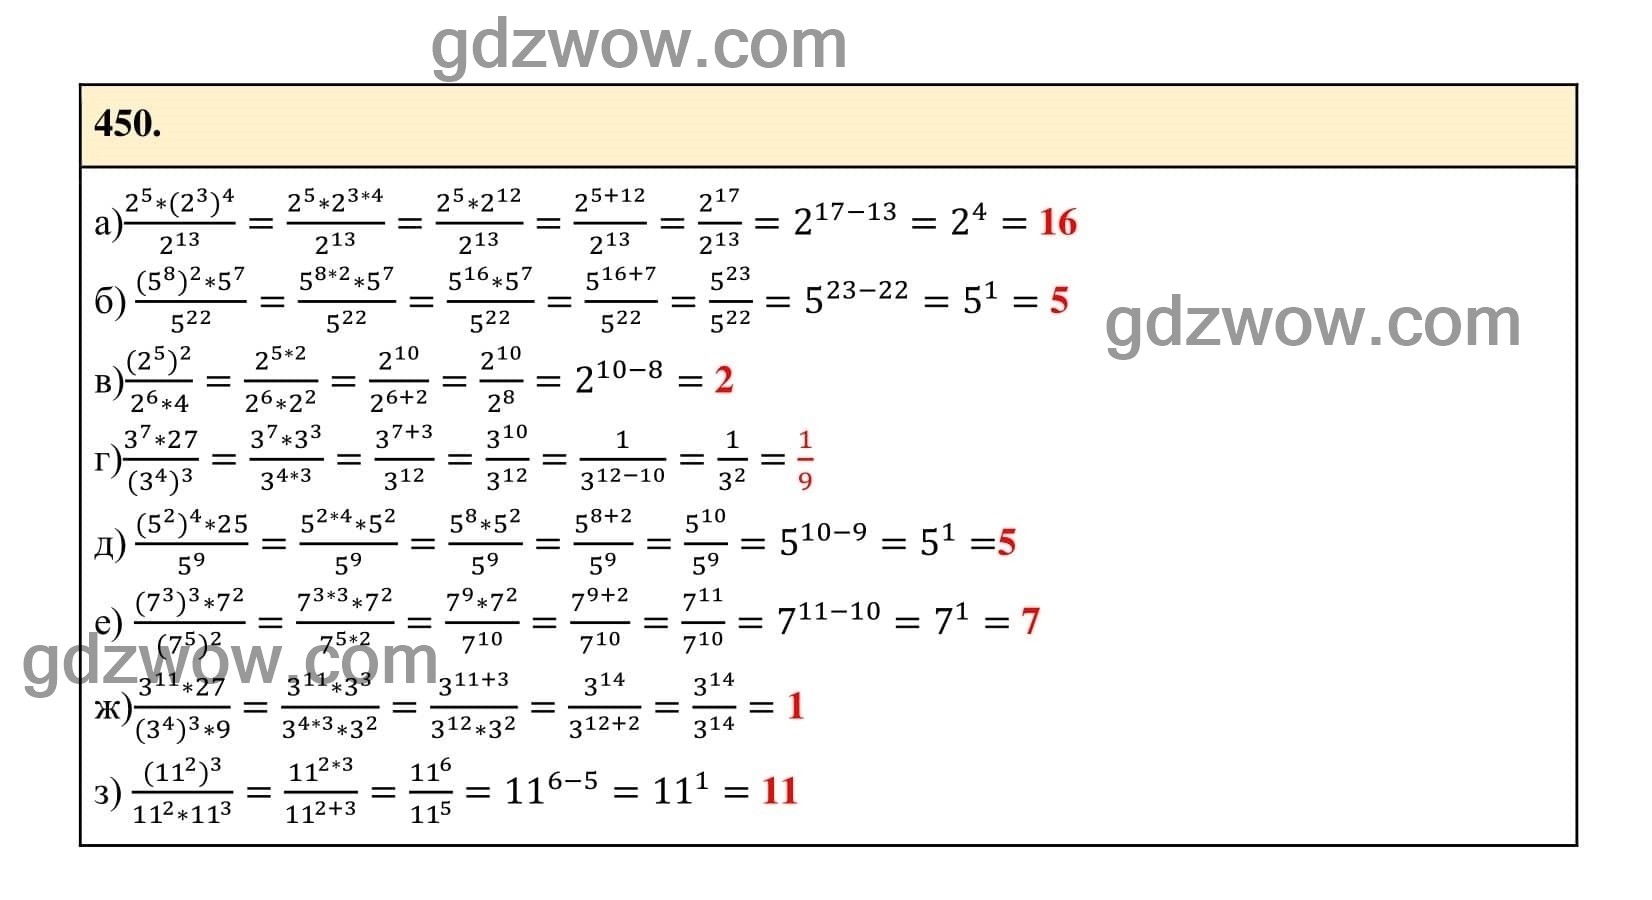 Упражнение 450 - ГДЗ по Алгебре 7 класс Учебник Макарычев (решебник) - GDZwow